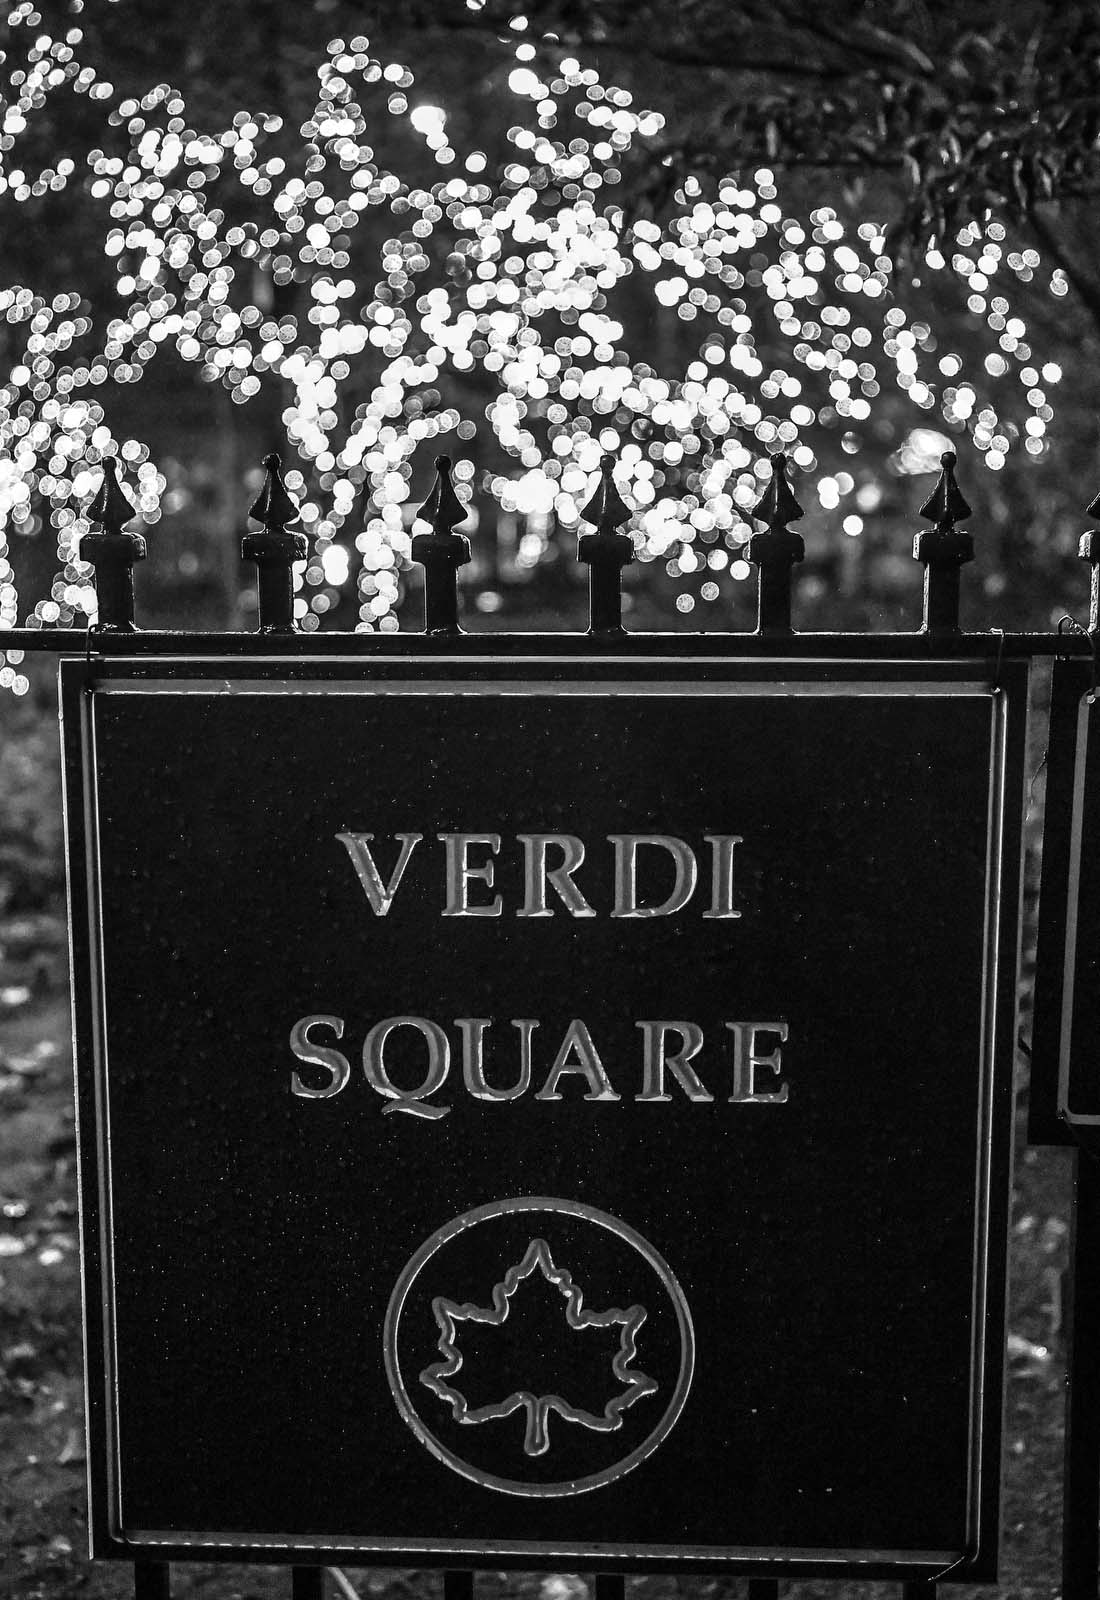 Verdi Square sign